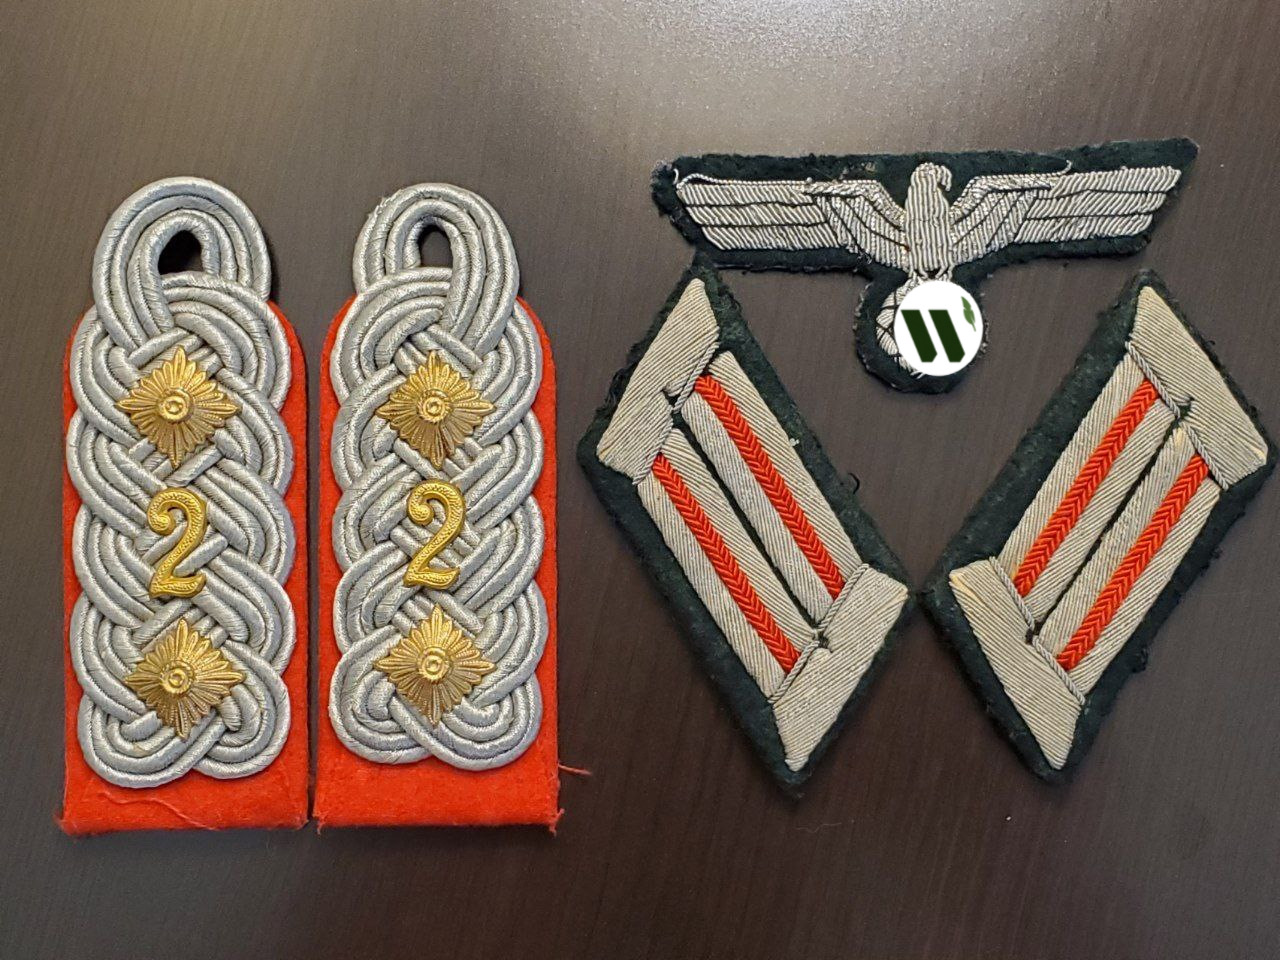 Комплект знаков отличия офицера артиллерии Вермахта из коллекции в США